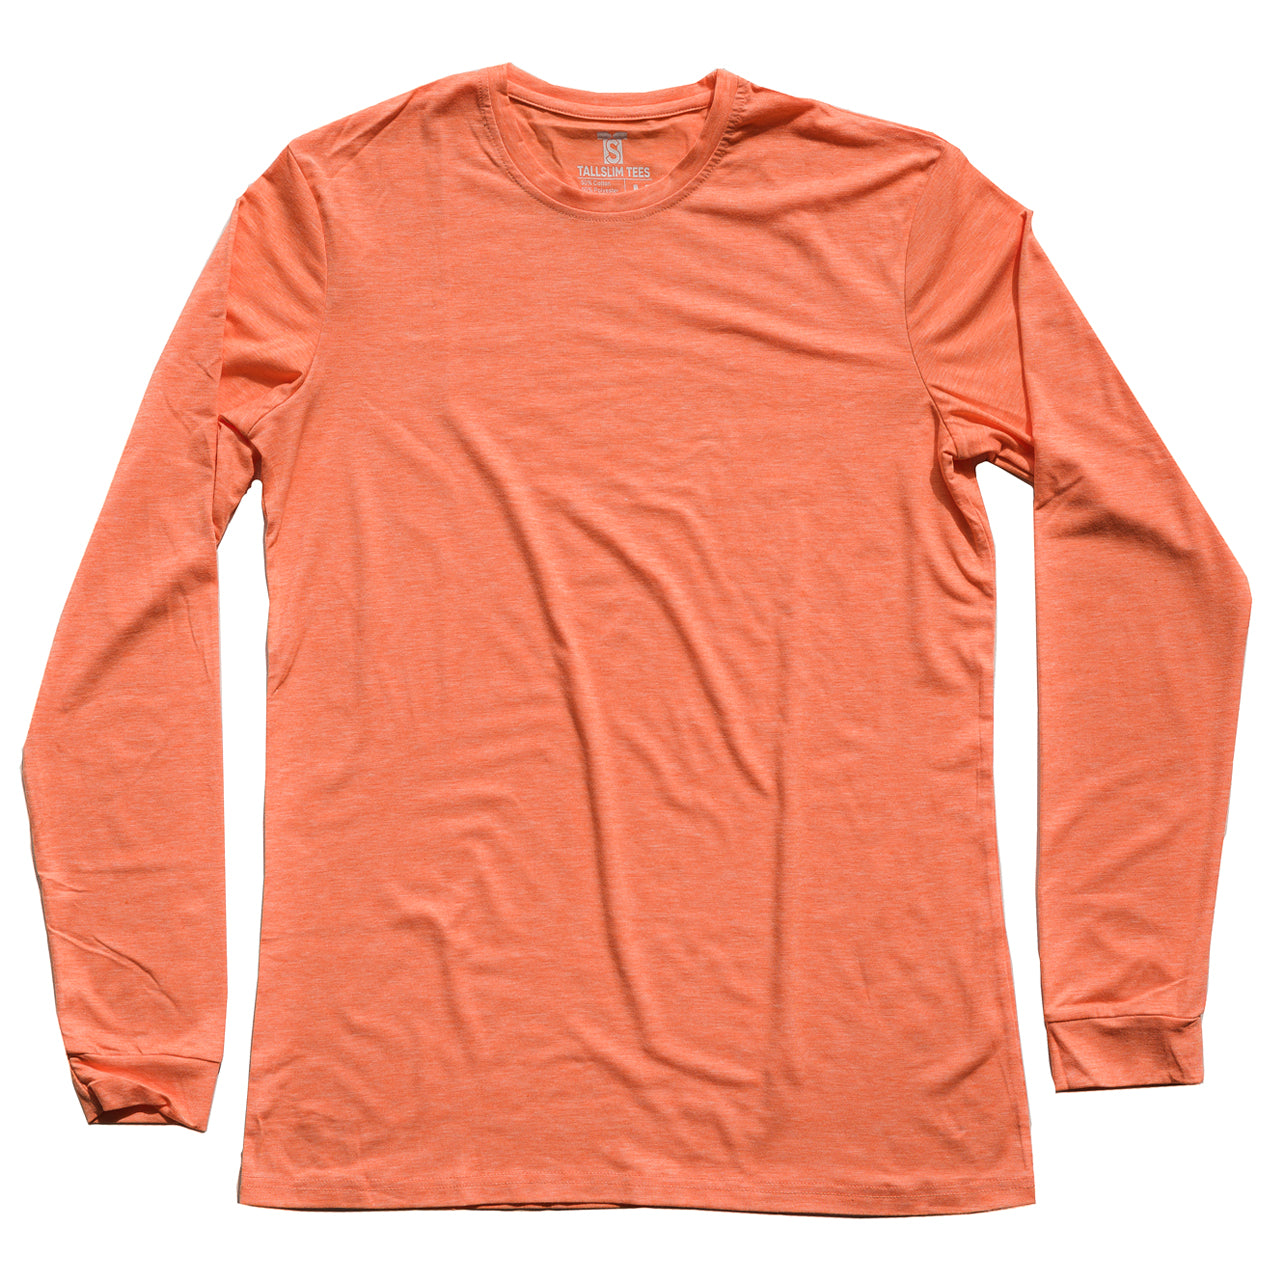 Orange Long Sleeve Crew Neck Shirt for Tall Slim Men